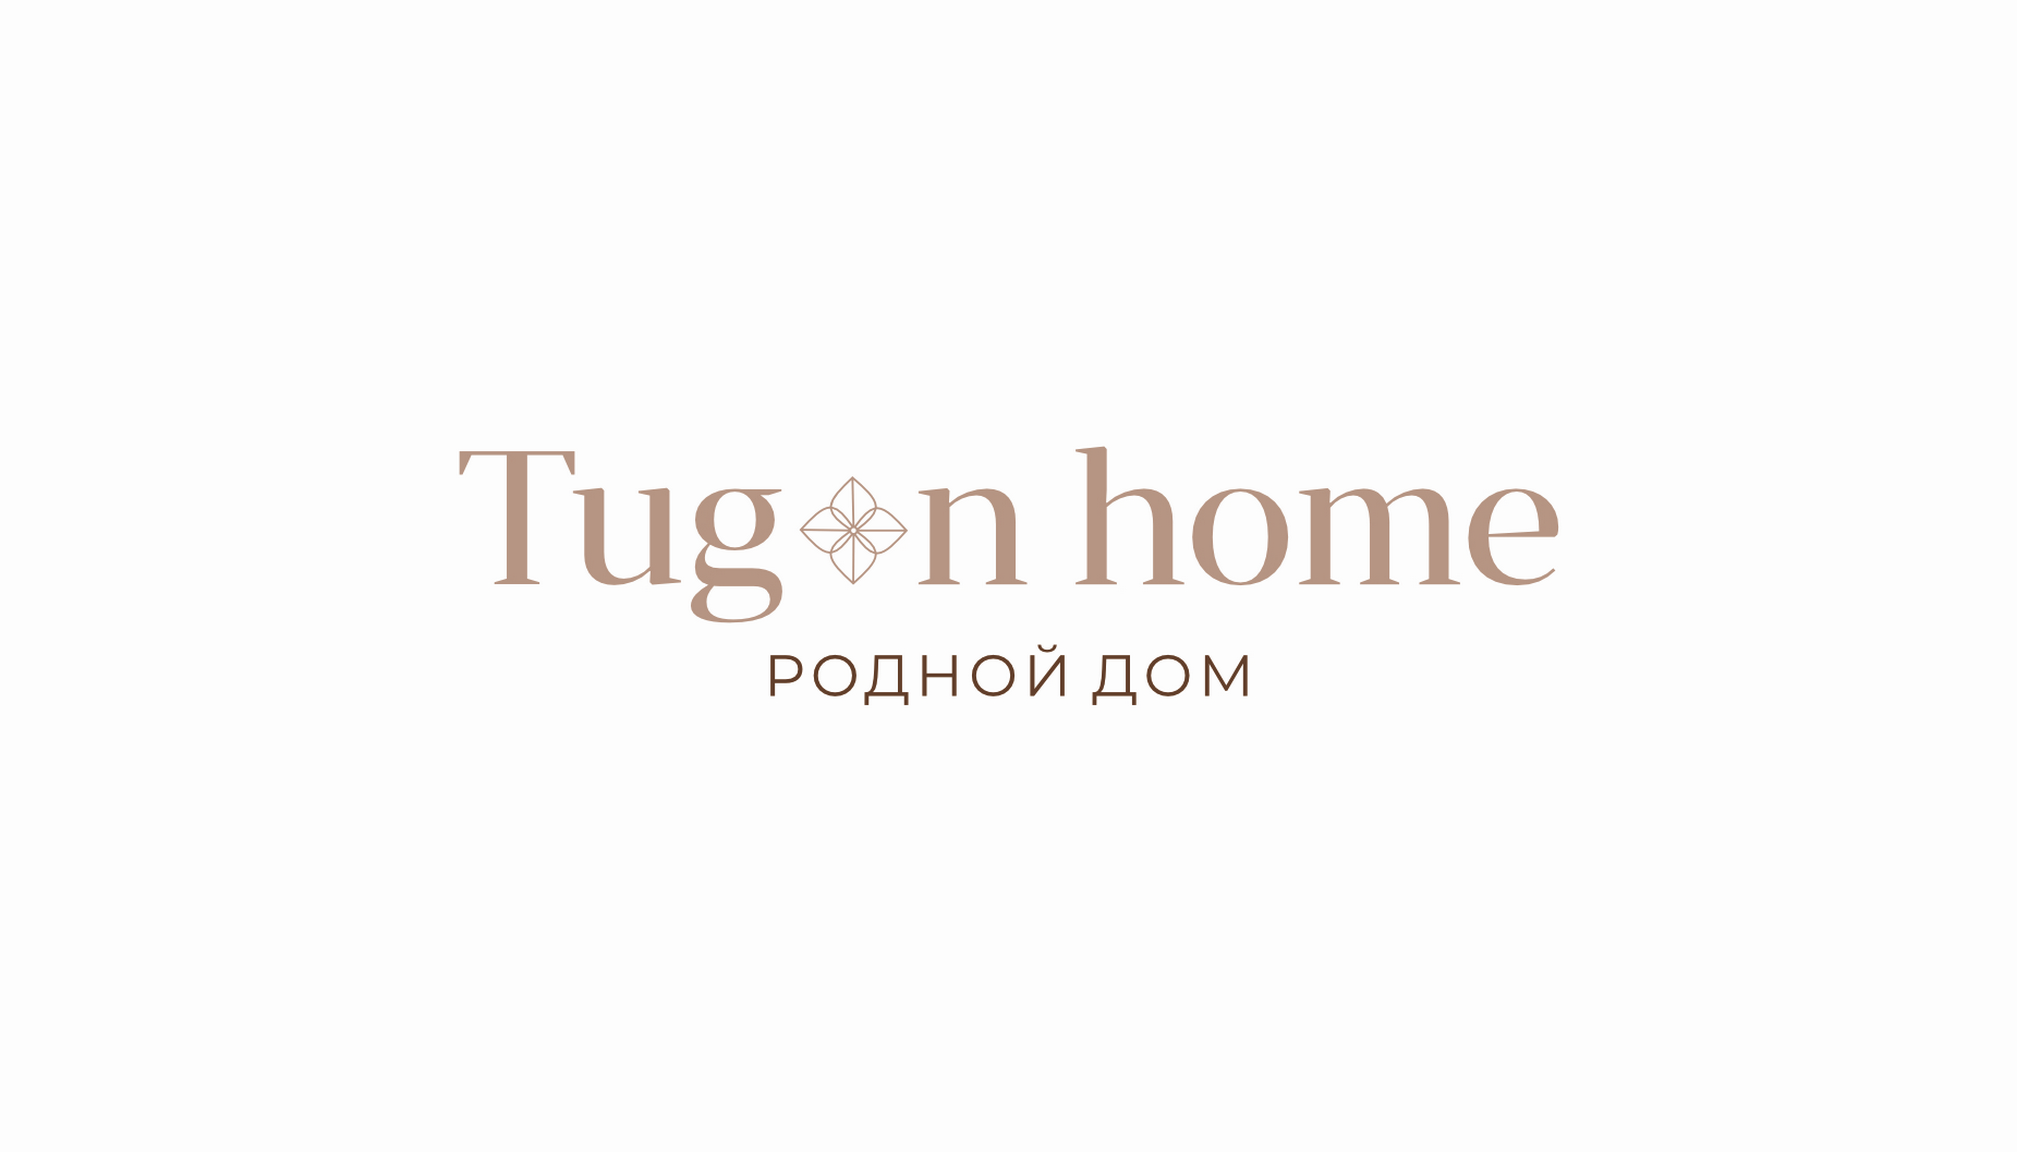 www.tuganhome.ru